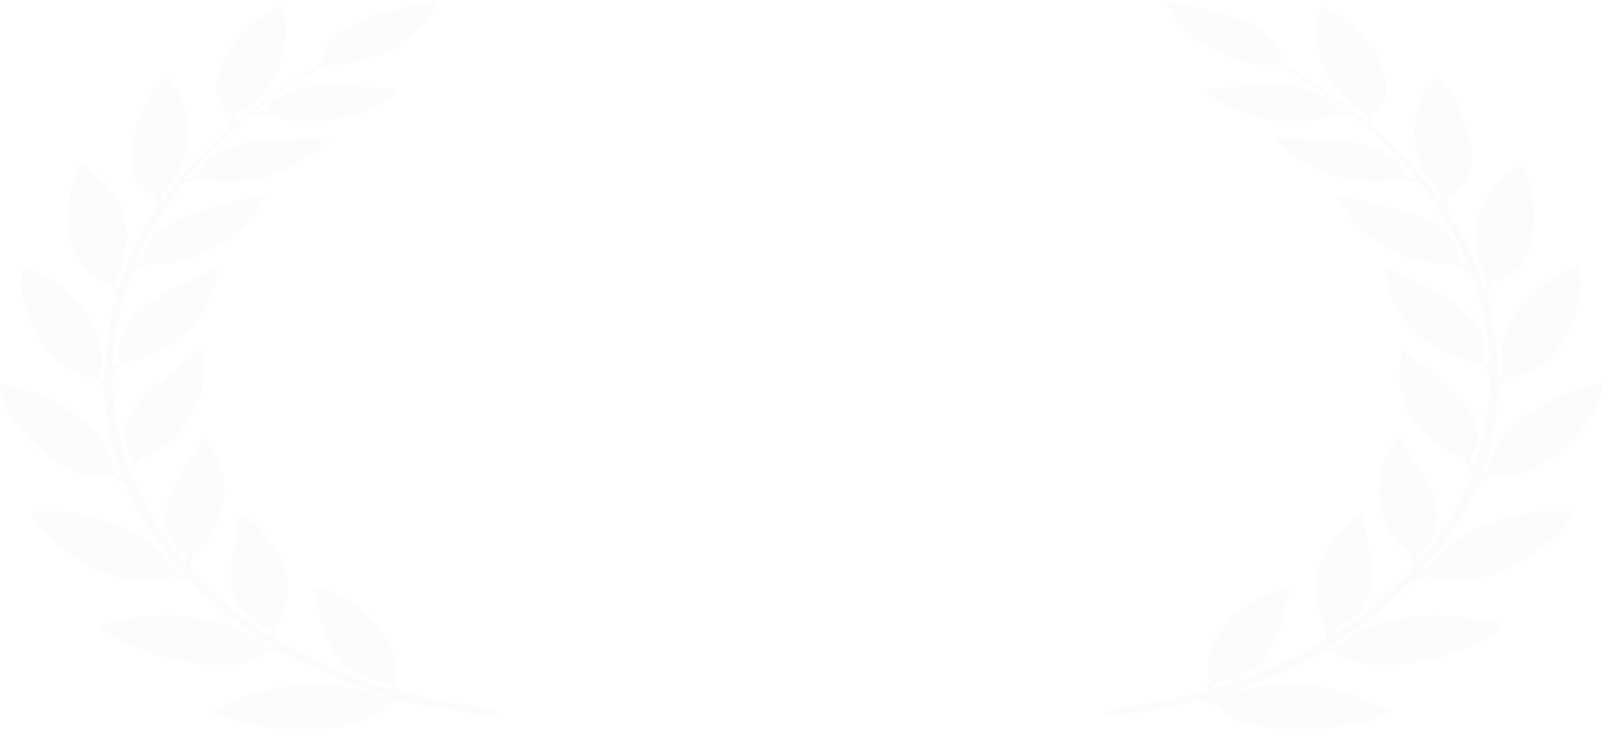 Nashville Film Festival2015 Official Selection Laurels PNG